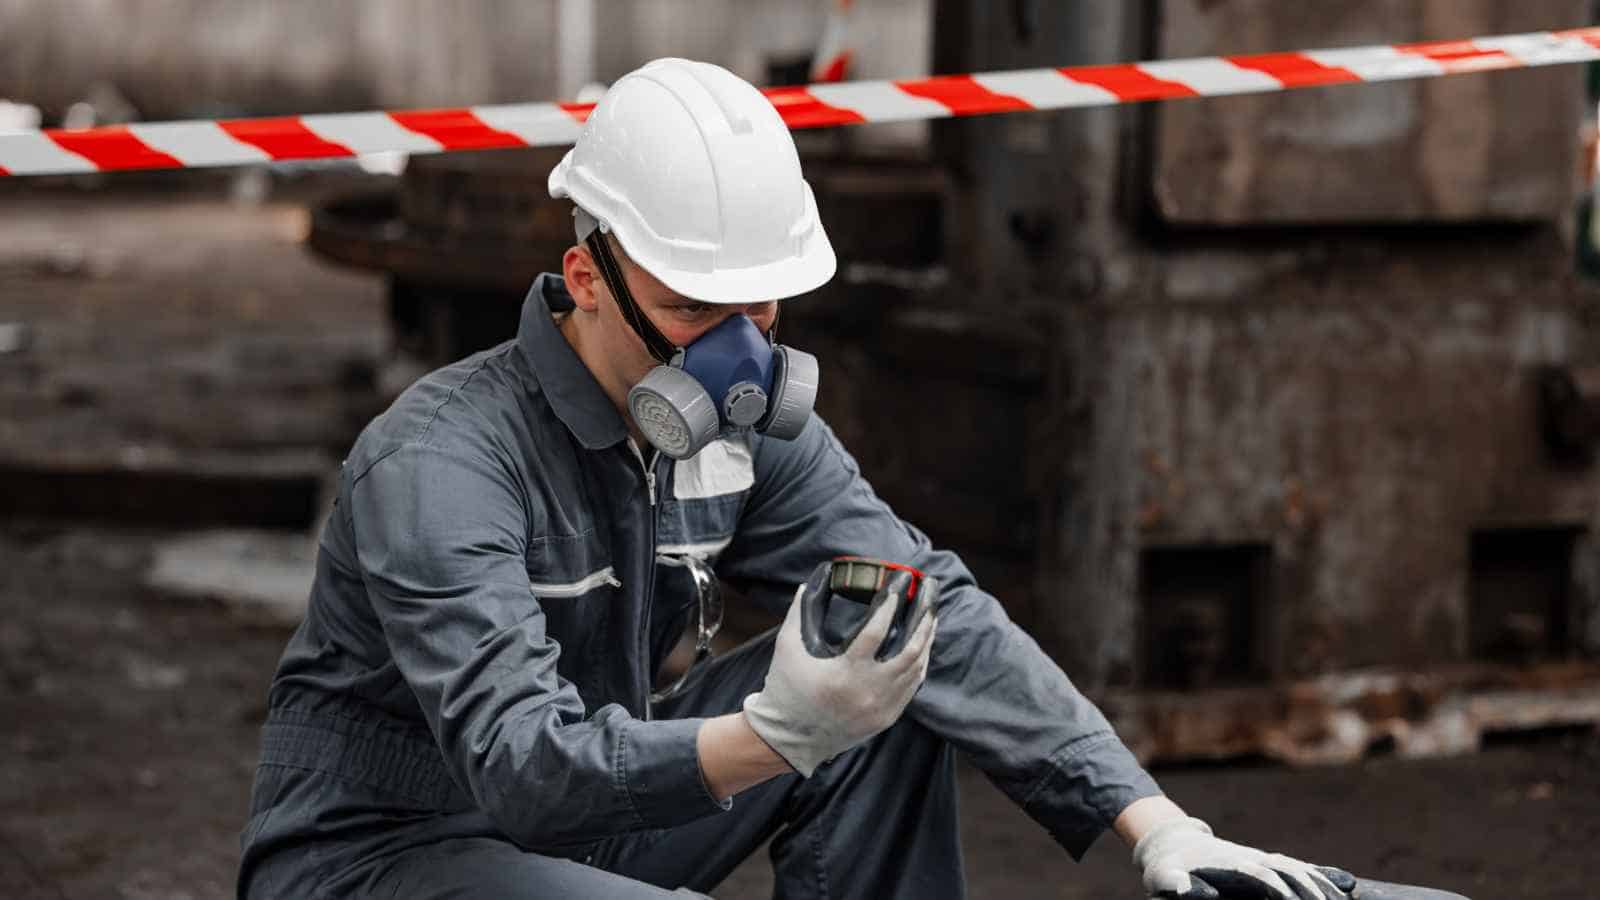 Exposing Workers To Hazardous Chemicals